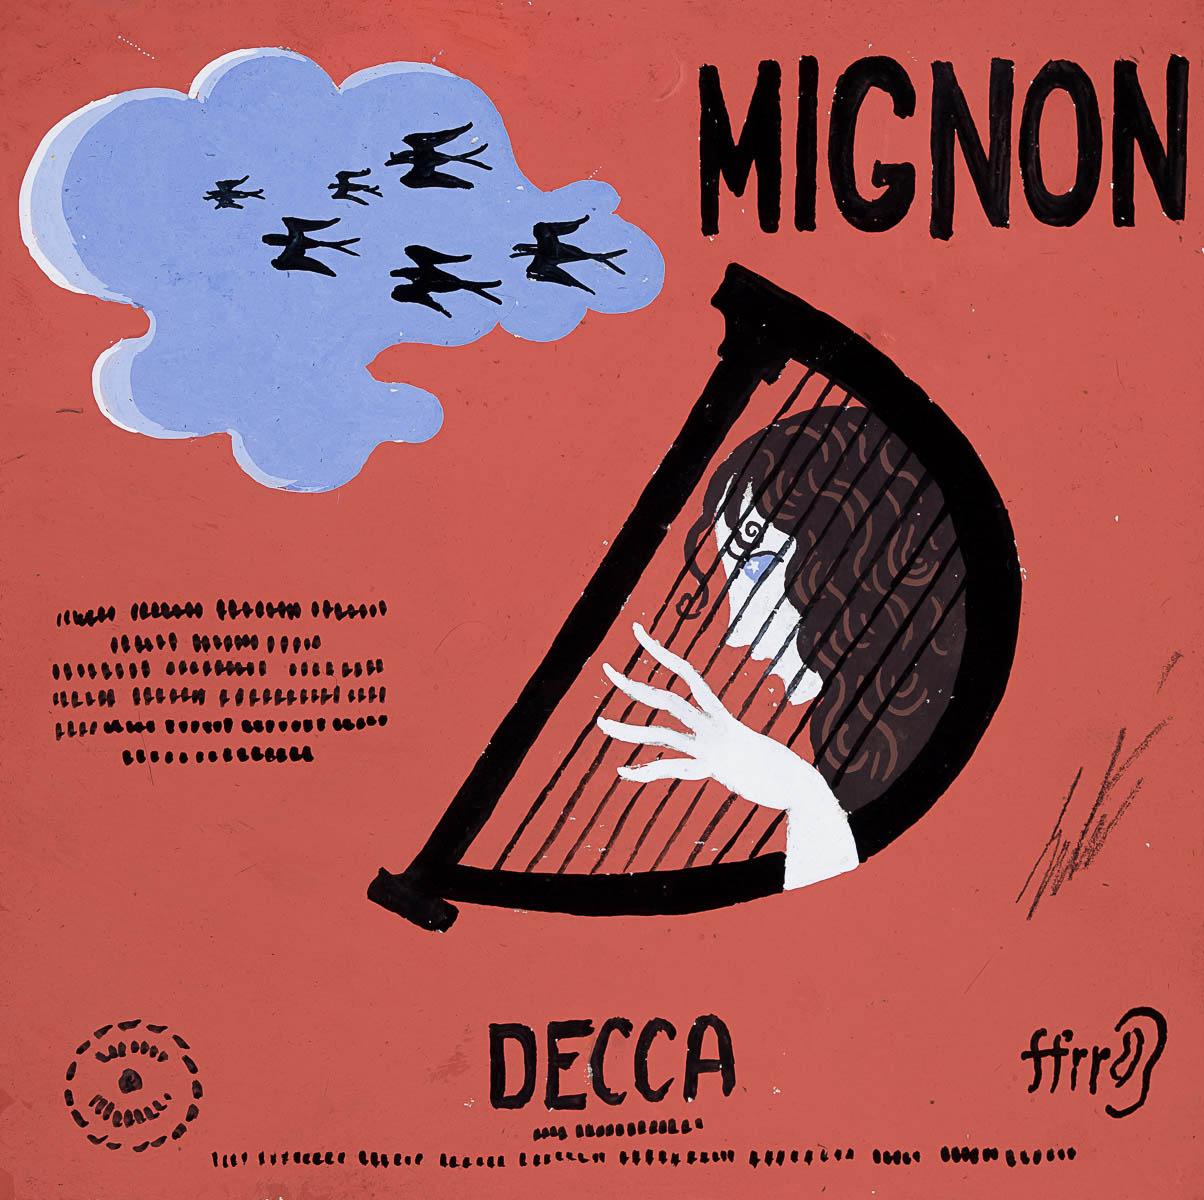 "Mignon" Design/One Decca